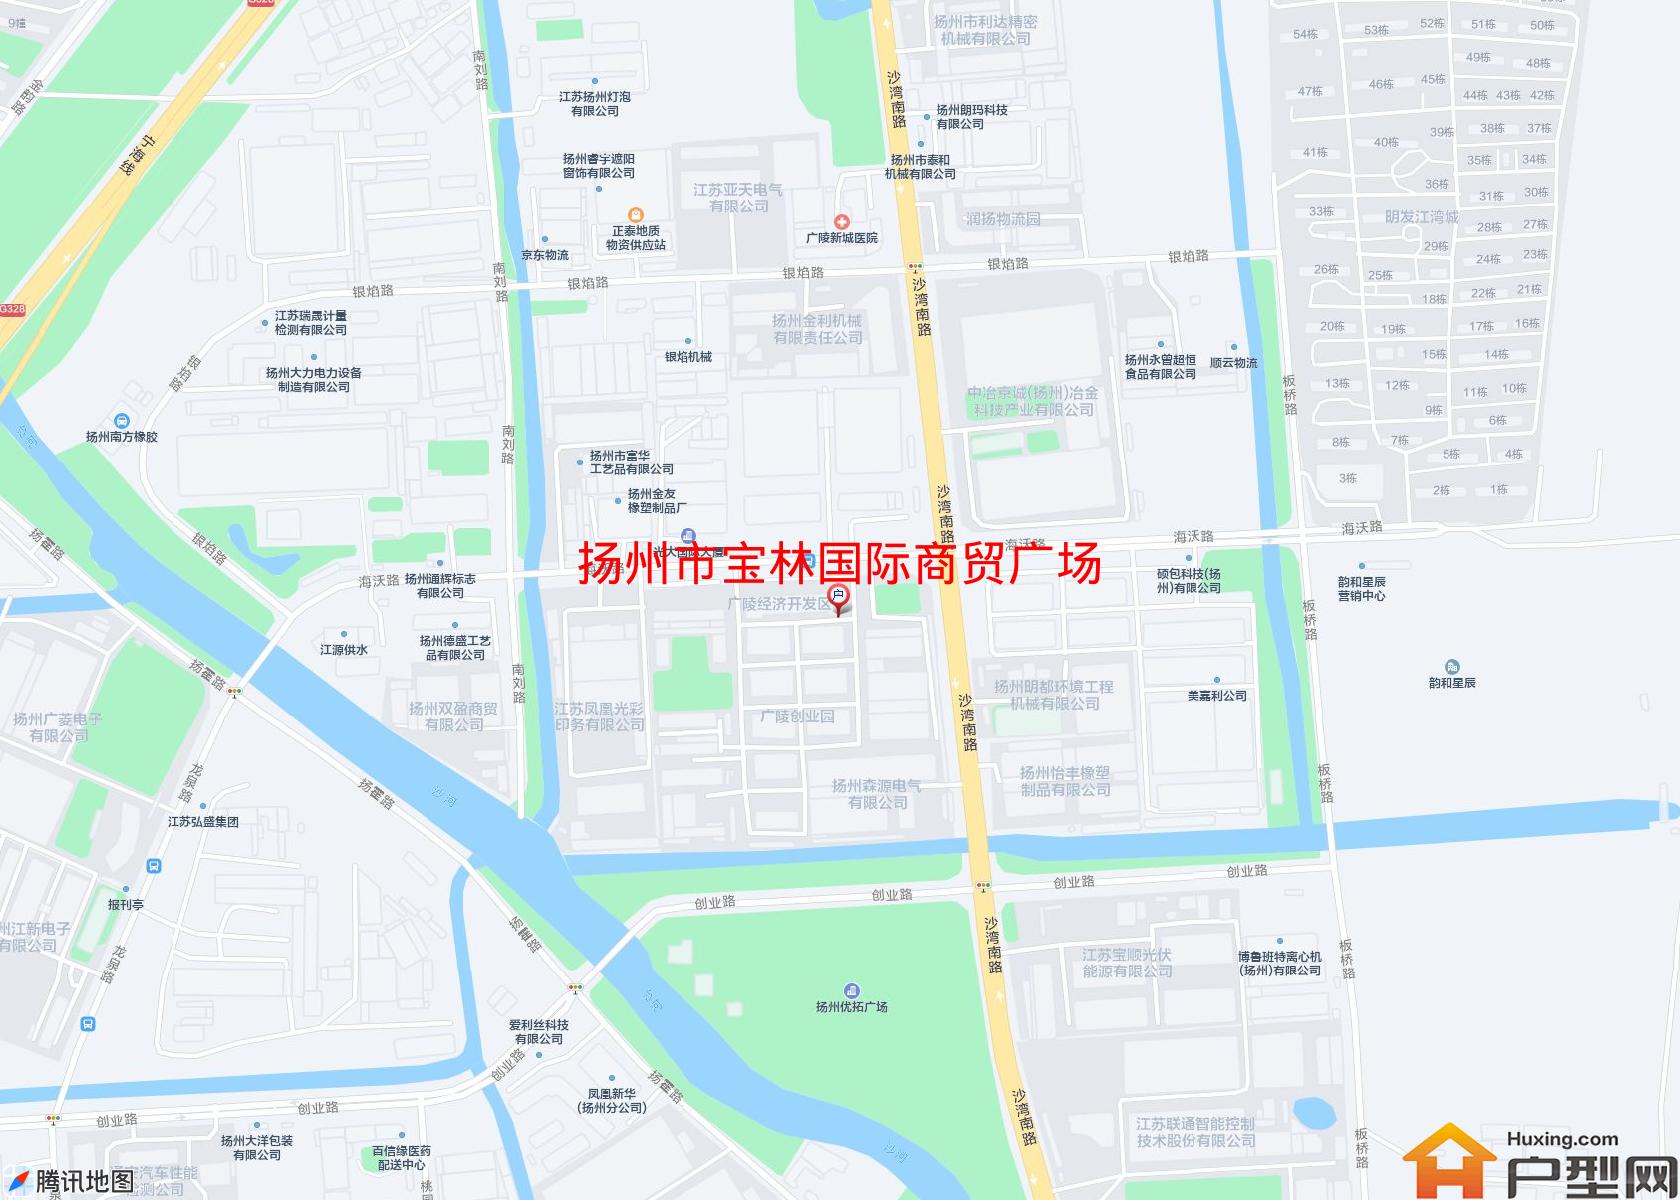 宝林国际商贸广场小区 - 户型网